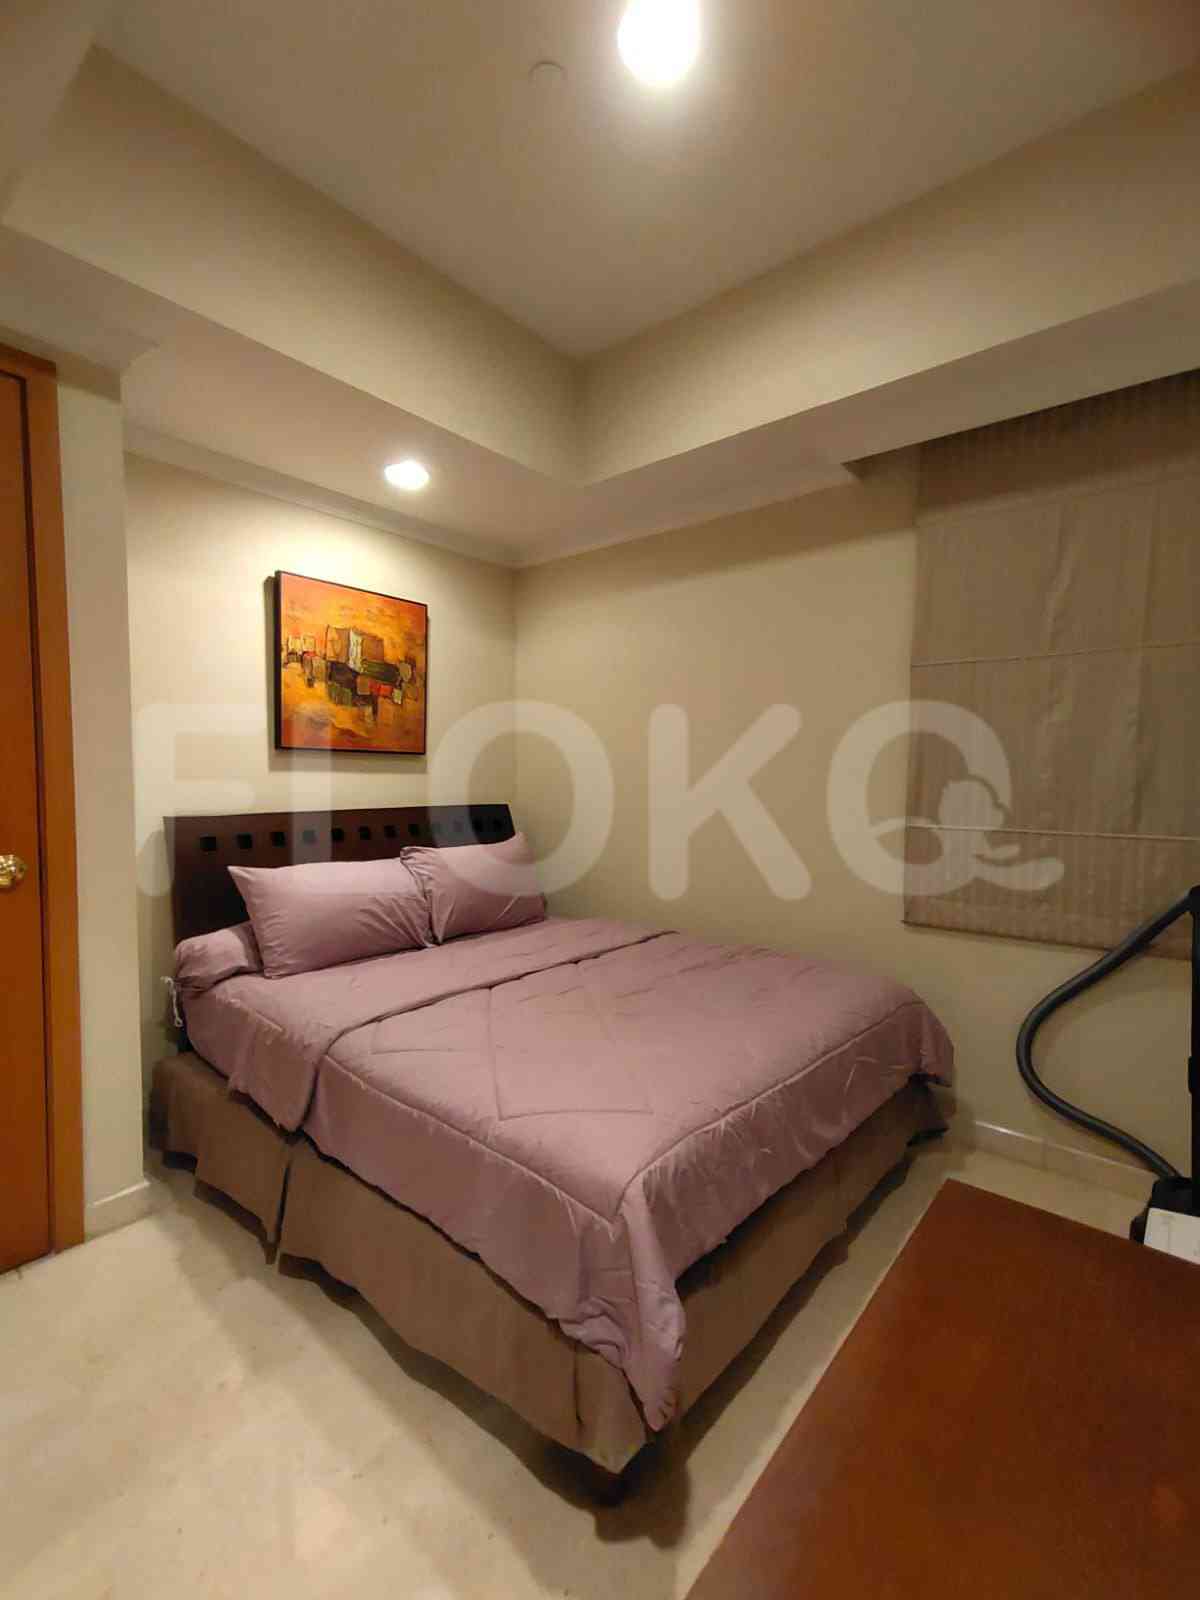 2 Bedroom on 12th Floor for Rent in Pavilion - fsc234 5